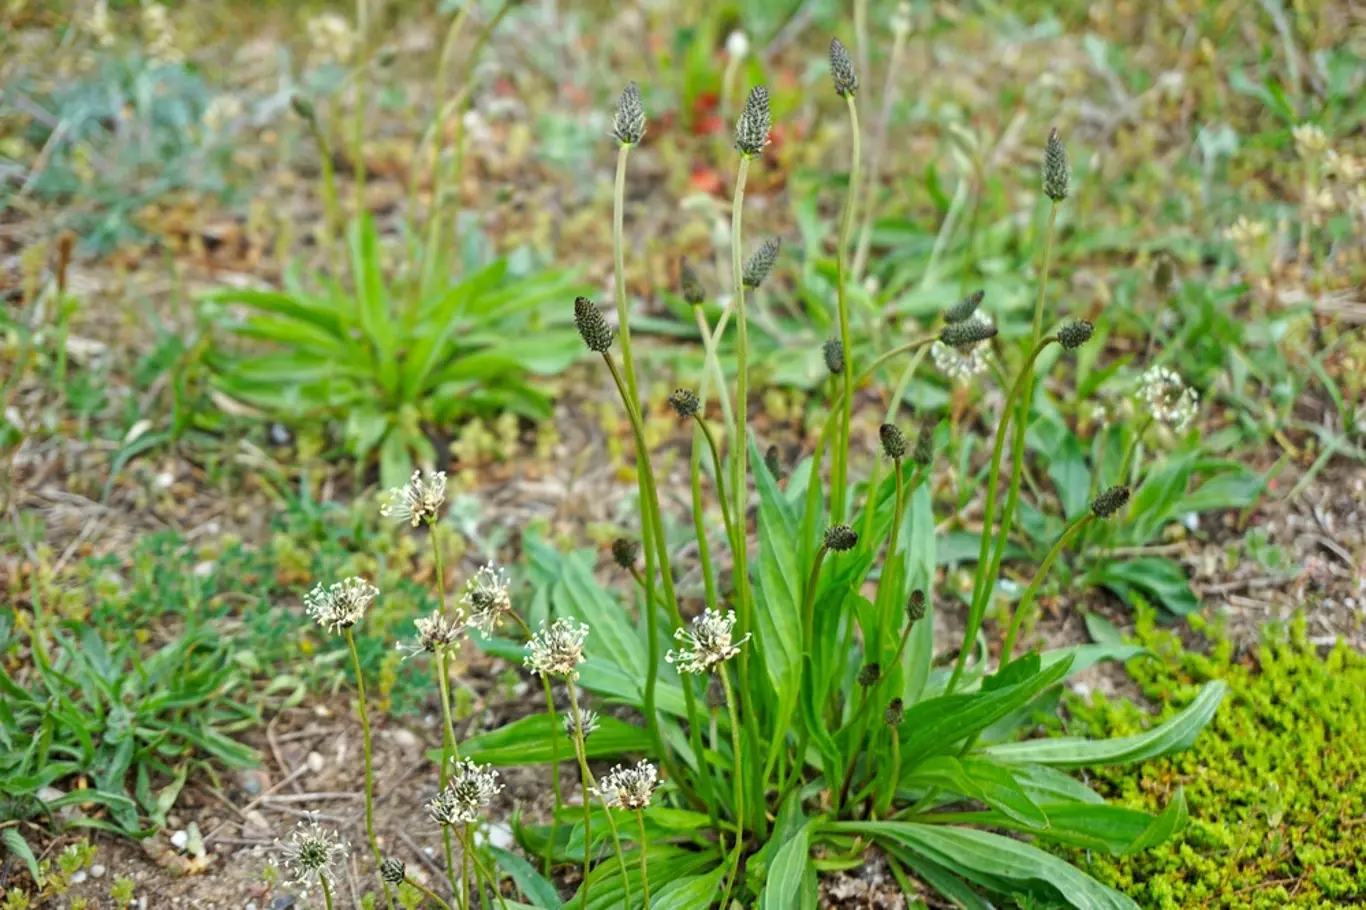 Jitrocel kopinatý (Plantago lanceolata) vytváří charakteristické přízemní růžice listů.